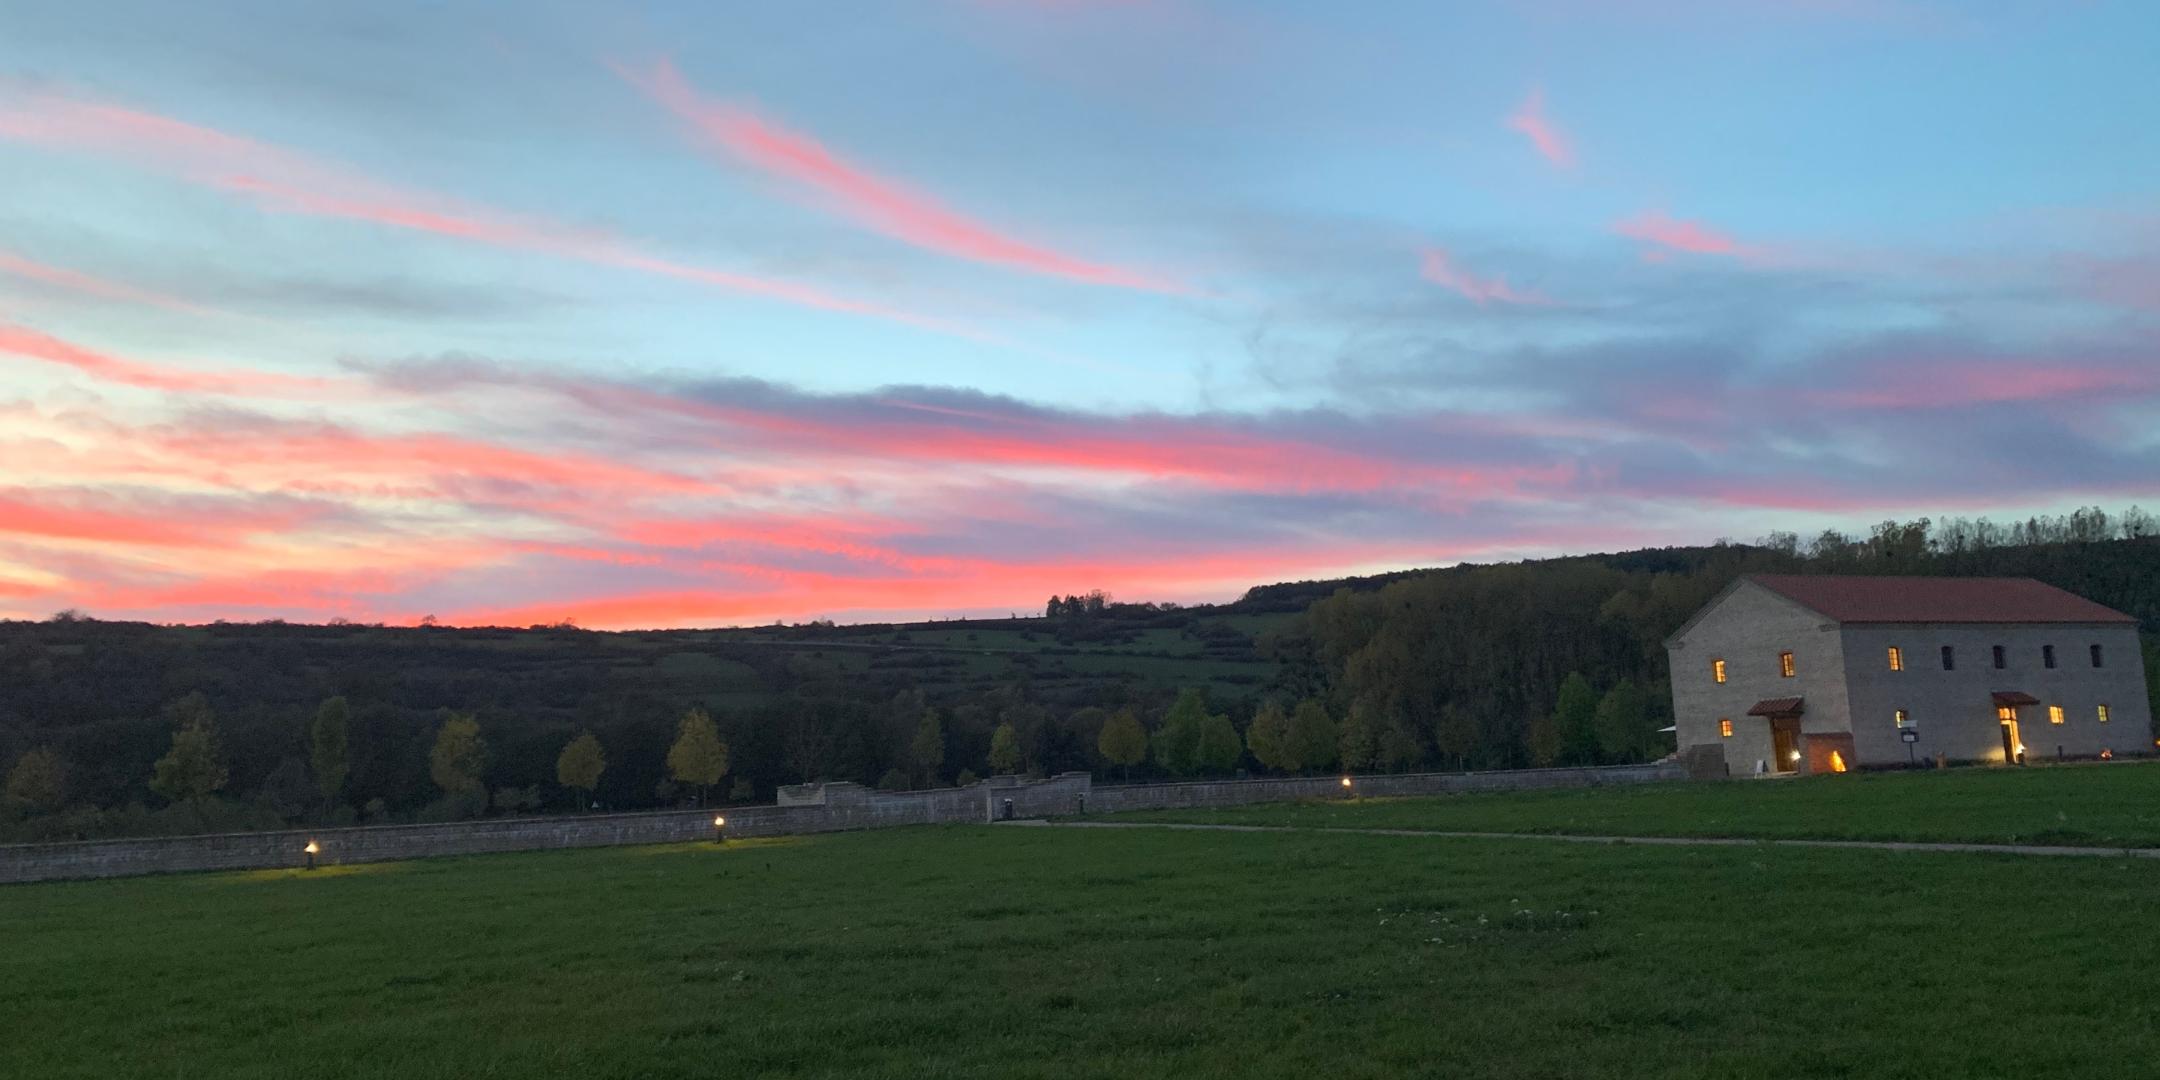 Sonnenuntergang im Naturpark Bliesbruck-Reinheim